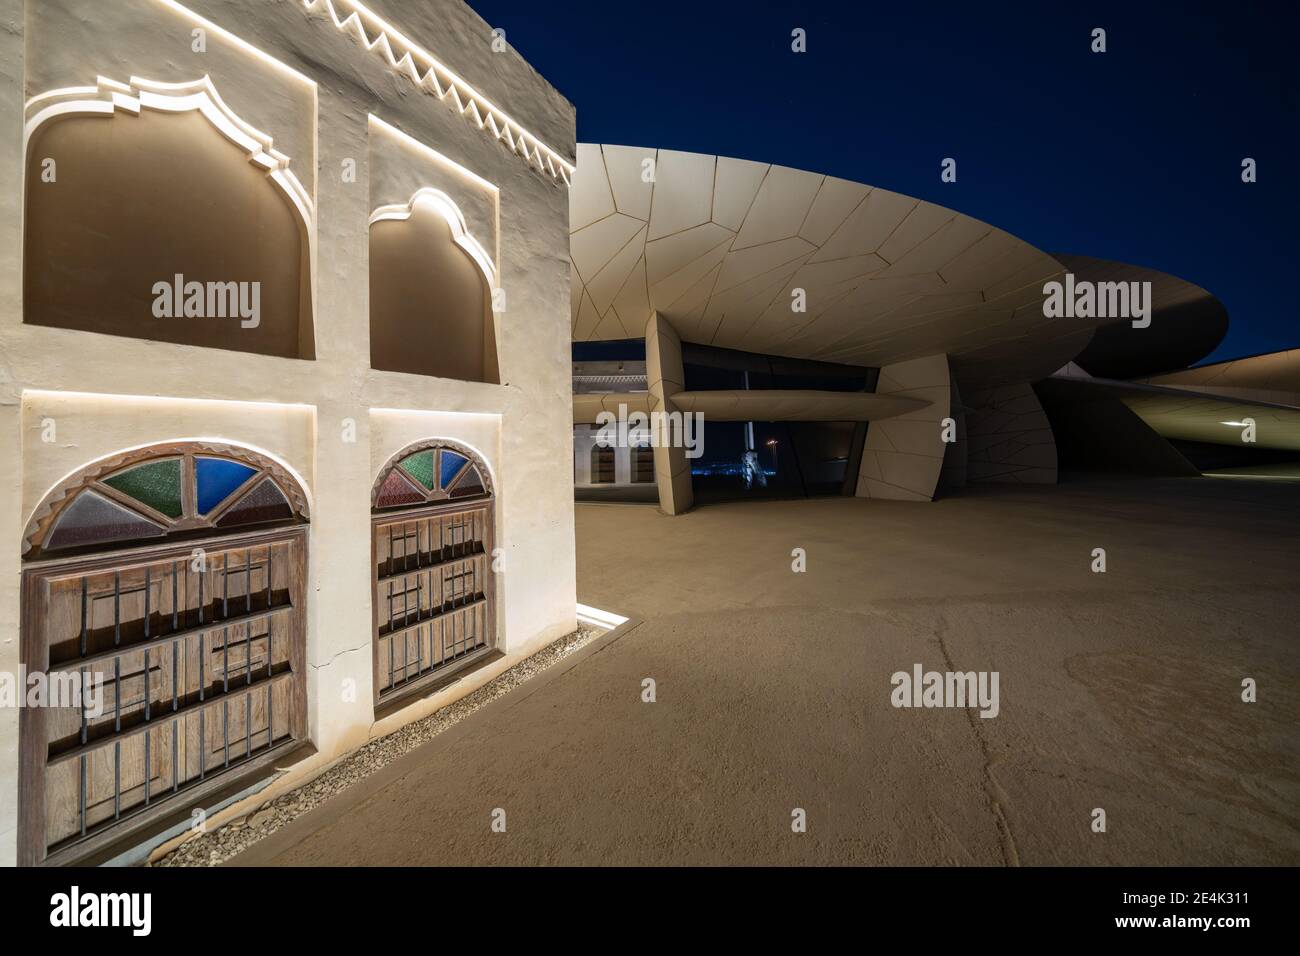 Bâtiment du Musée national du Qatar - conçu par un architecte français Jean nouvel et inspiré par la rose du désert local Banque D'Images